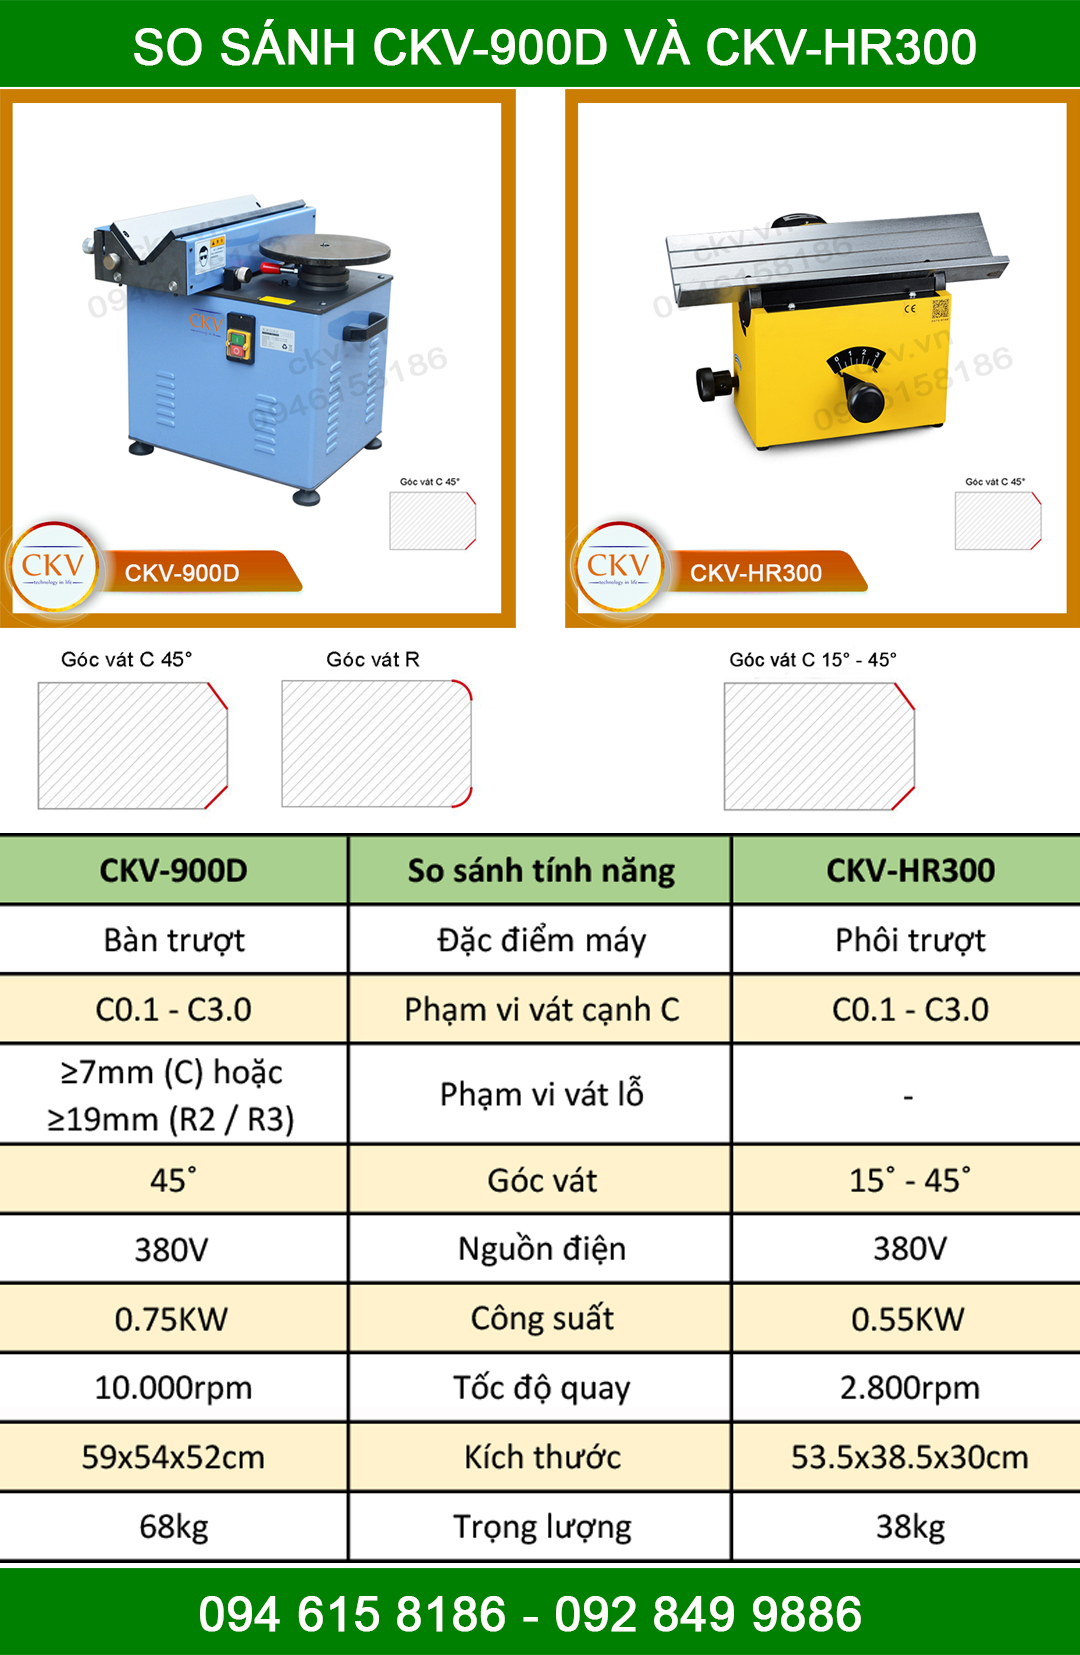 So sánh CKV-900D và CKV-HR300